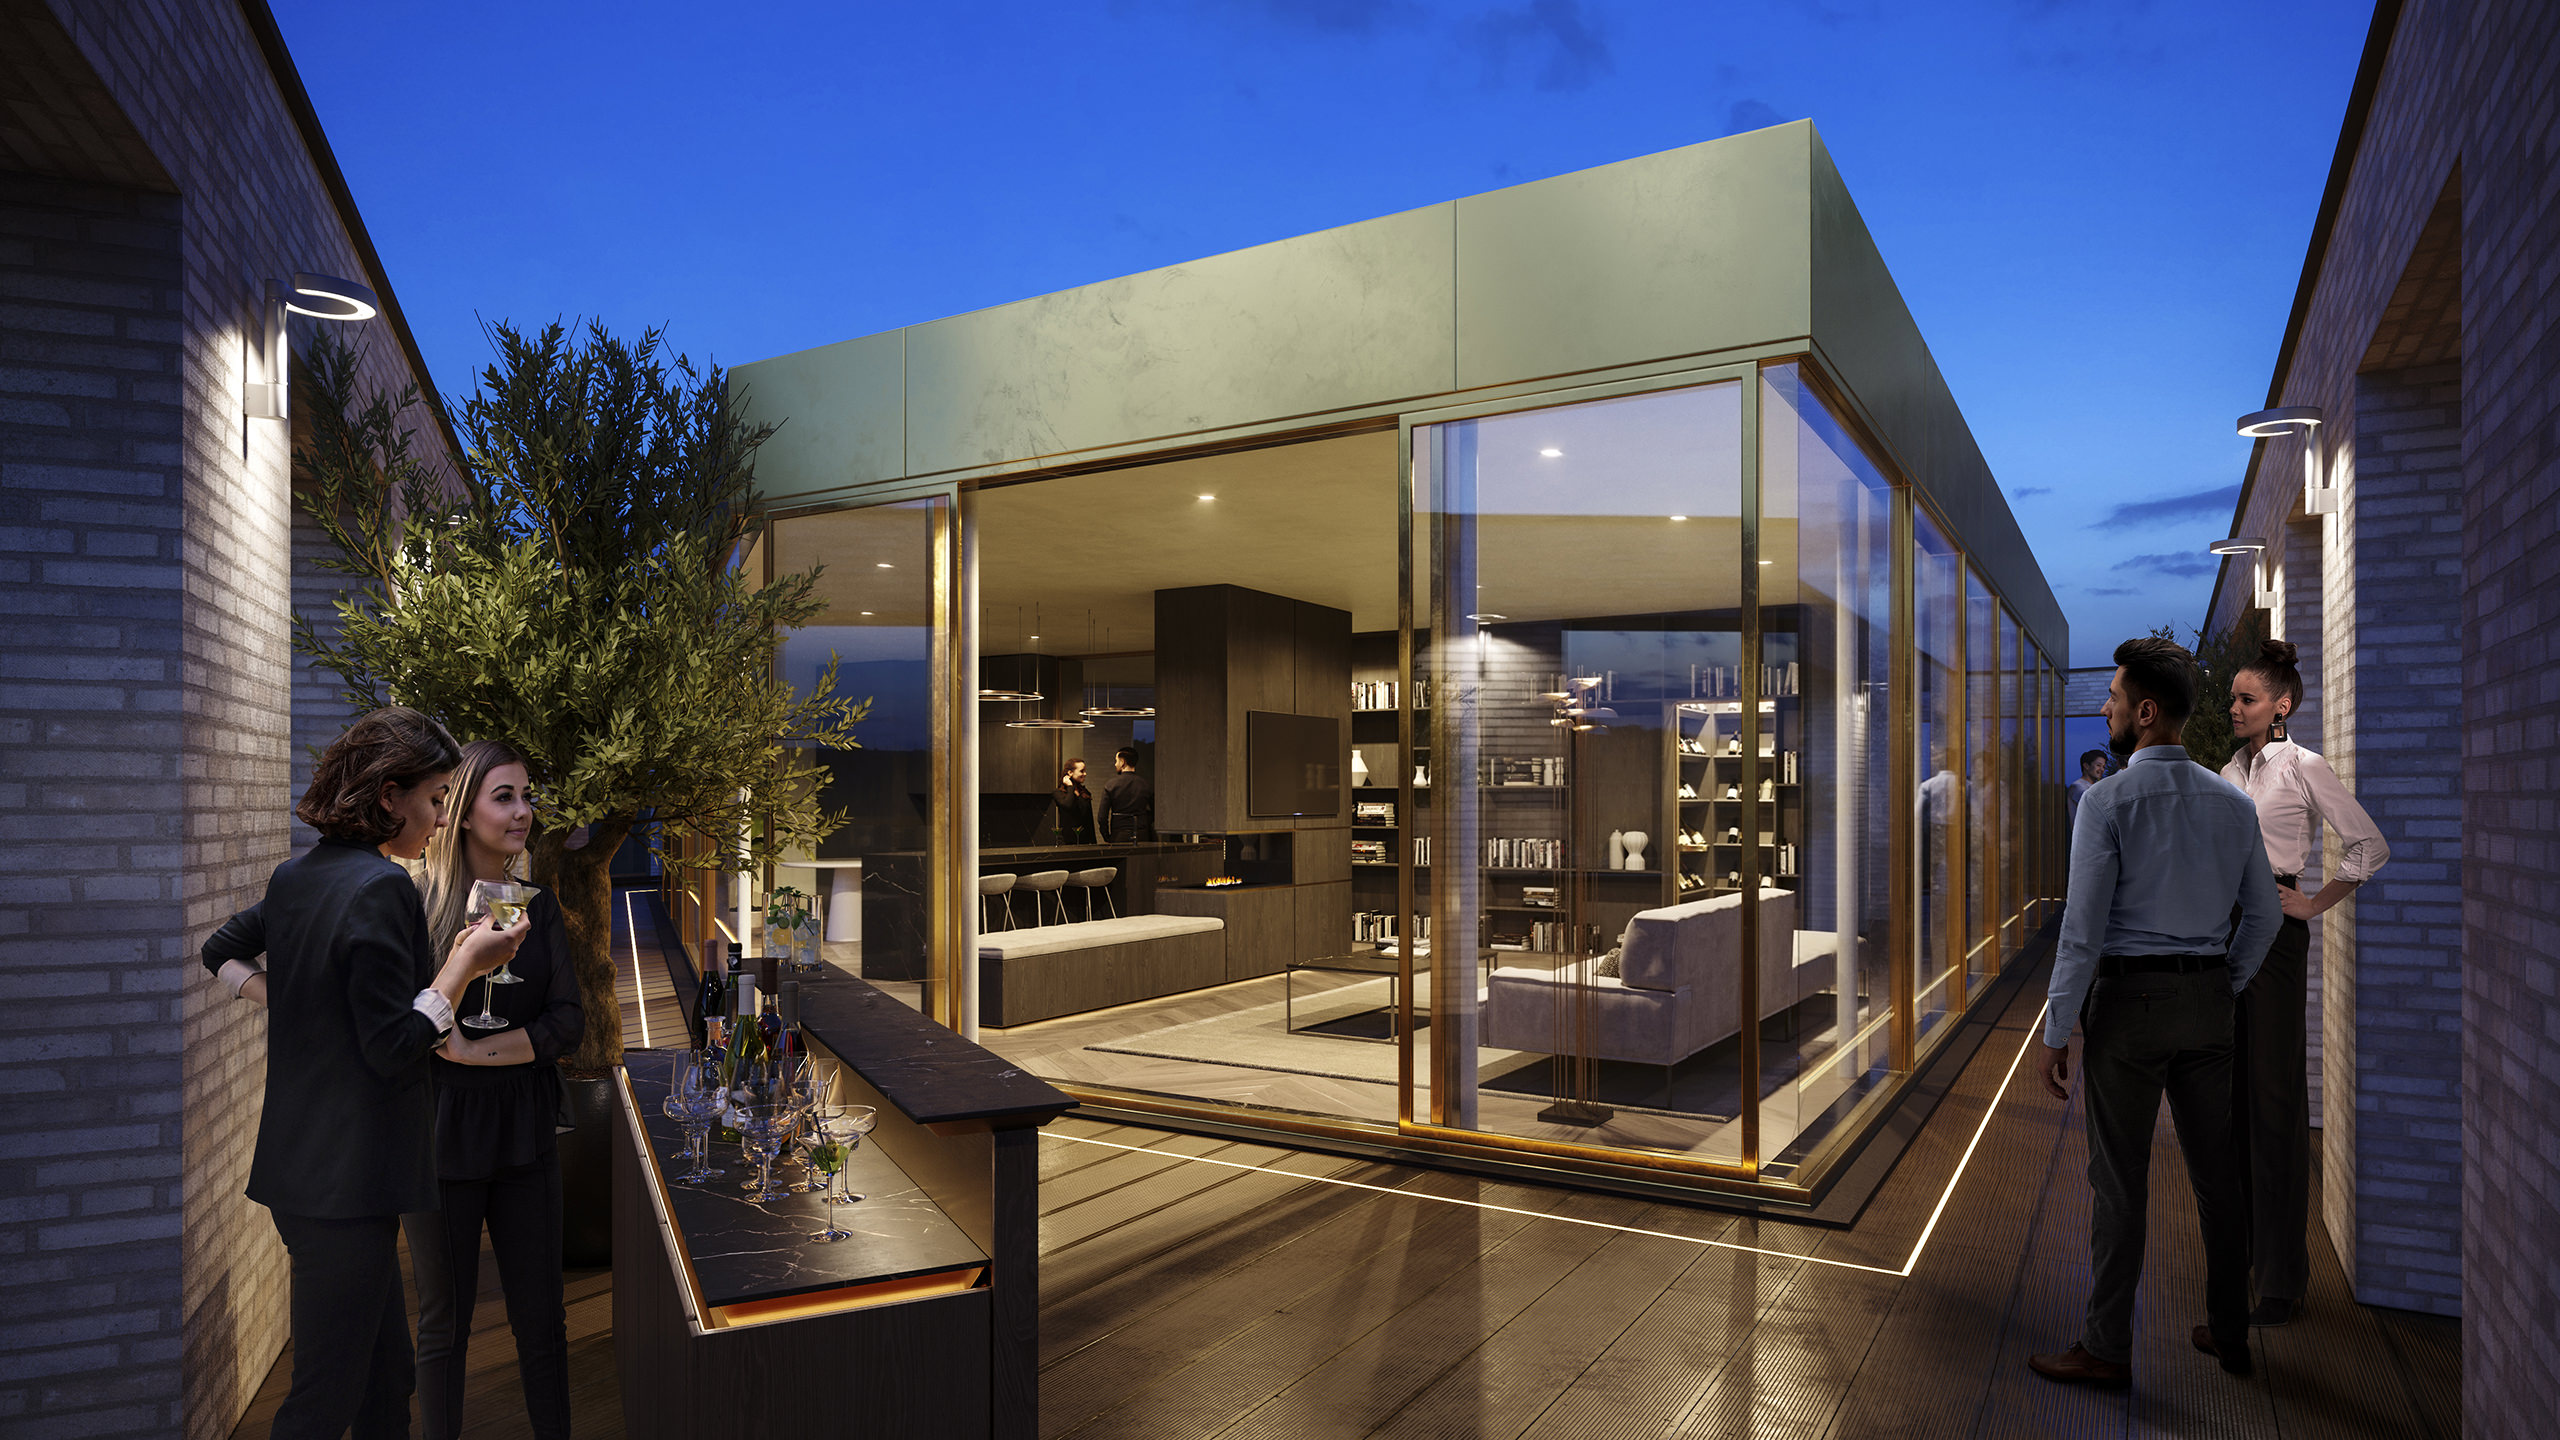 Visualisation de la terrasse intérieure 3D avec un réservoir en verre servant de bar au milieu